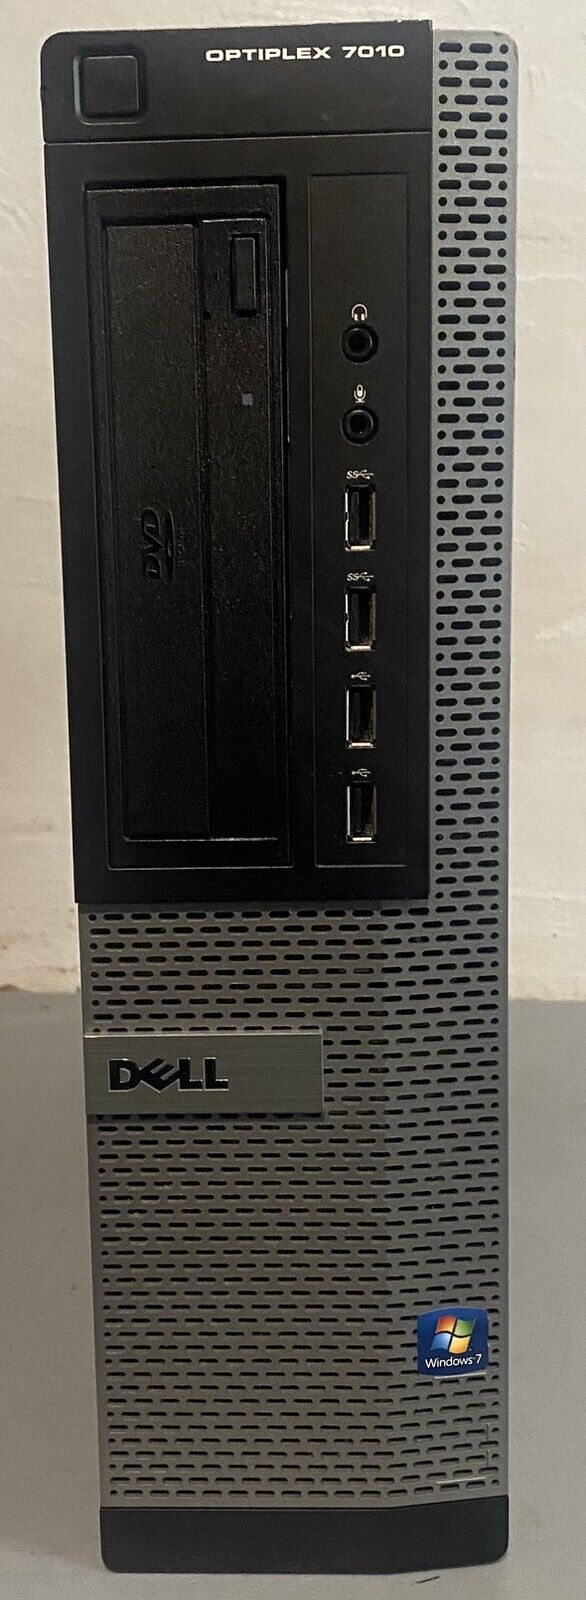 Dell Optiplex 7010 SFF, i7-3770 @ 3.4Ghz, 8Gb Ram - No OS/HDD - w/HDD Caddy